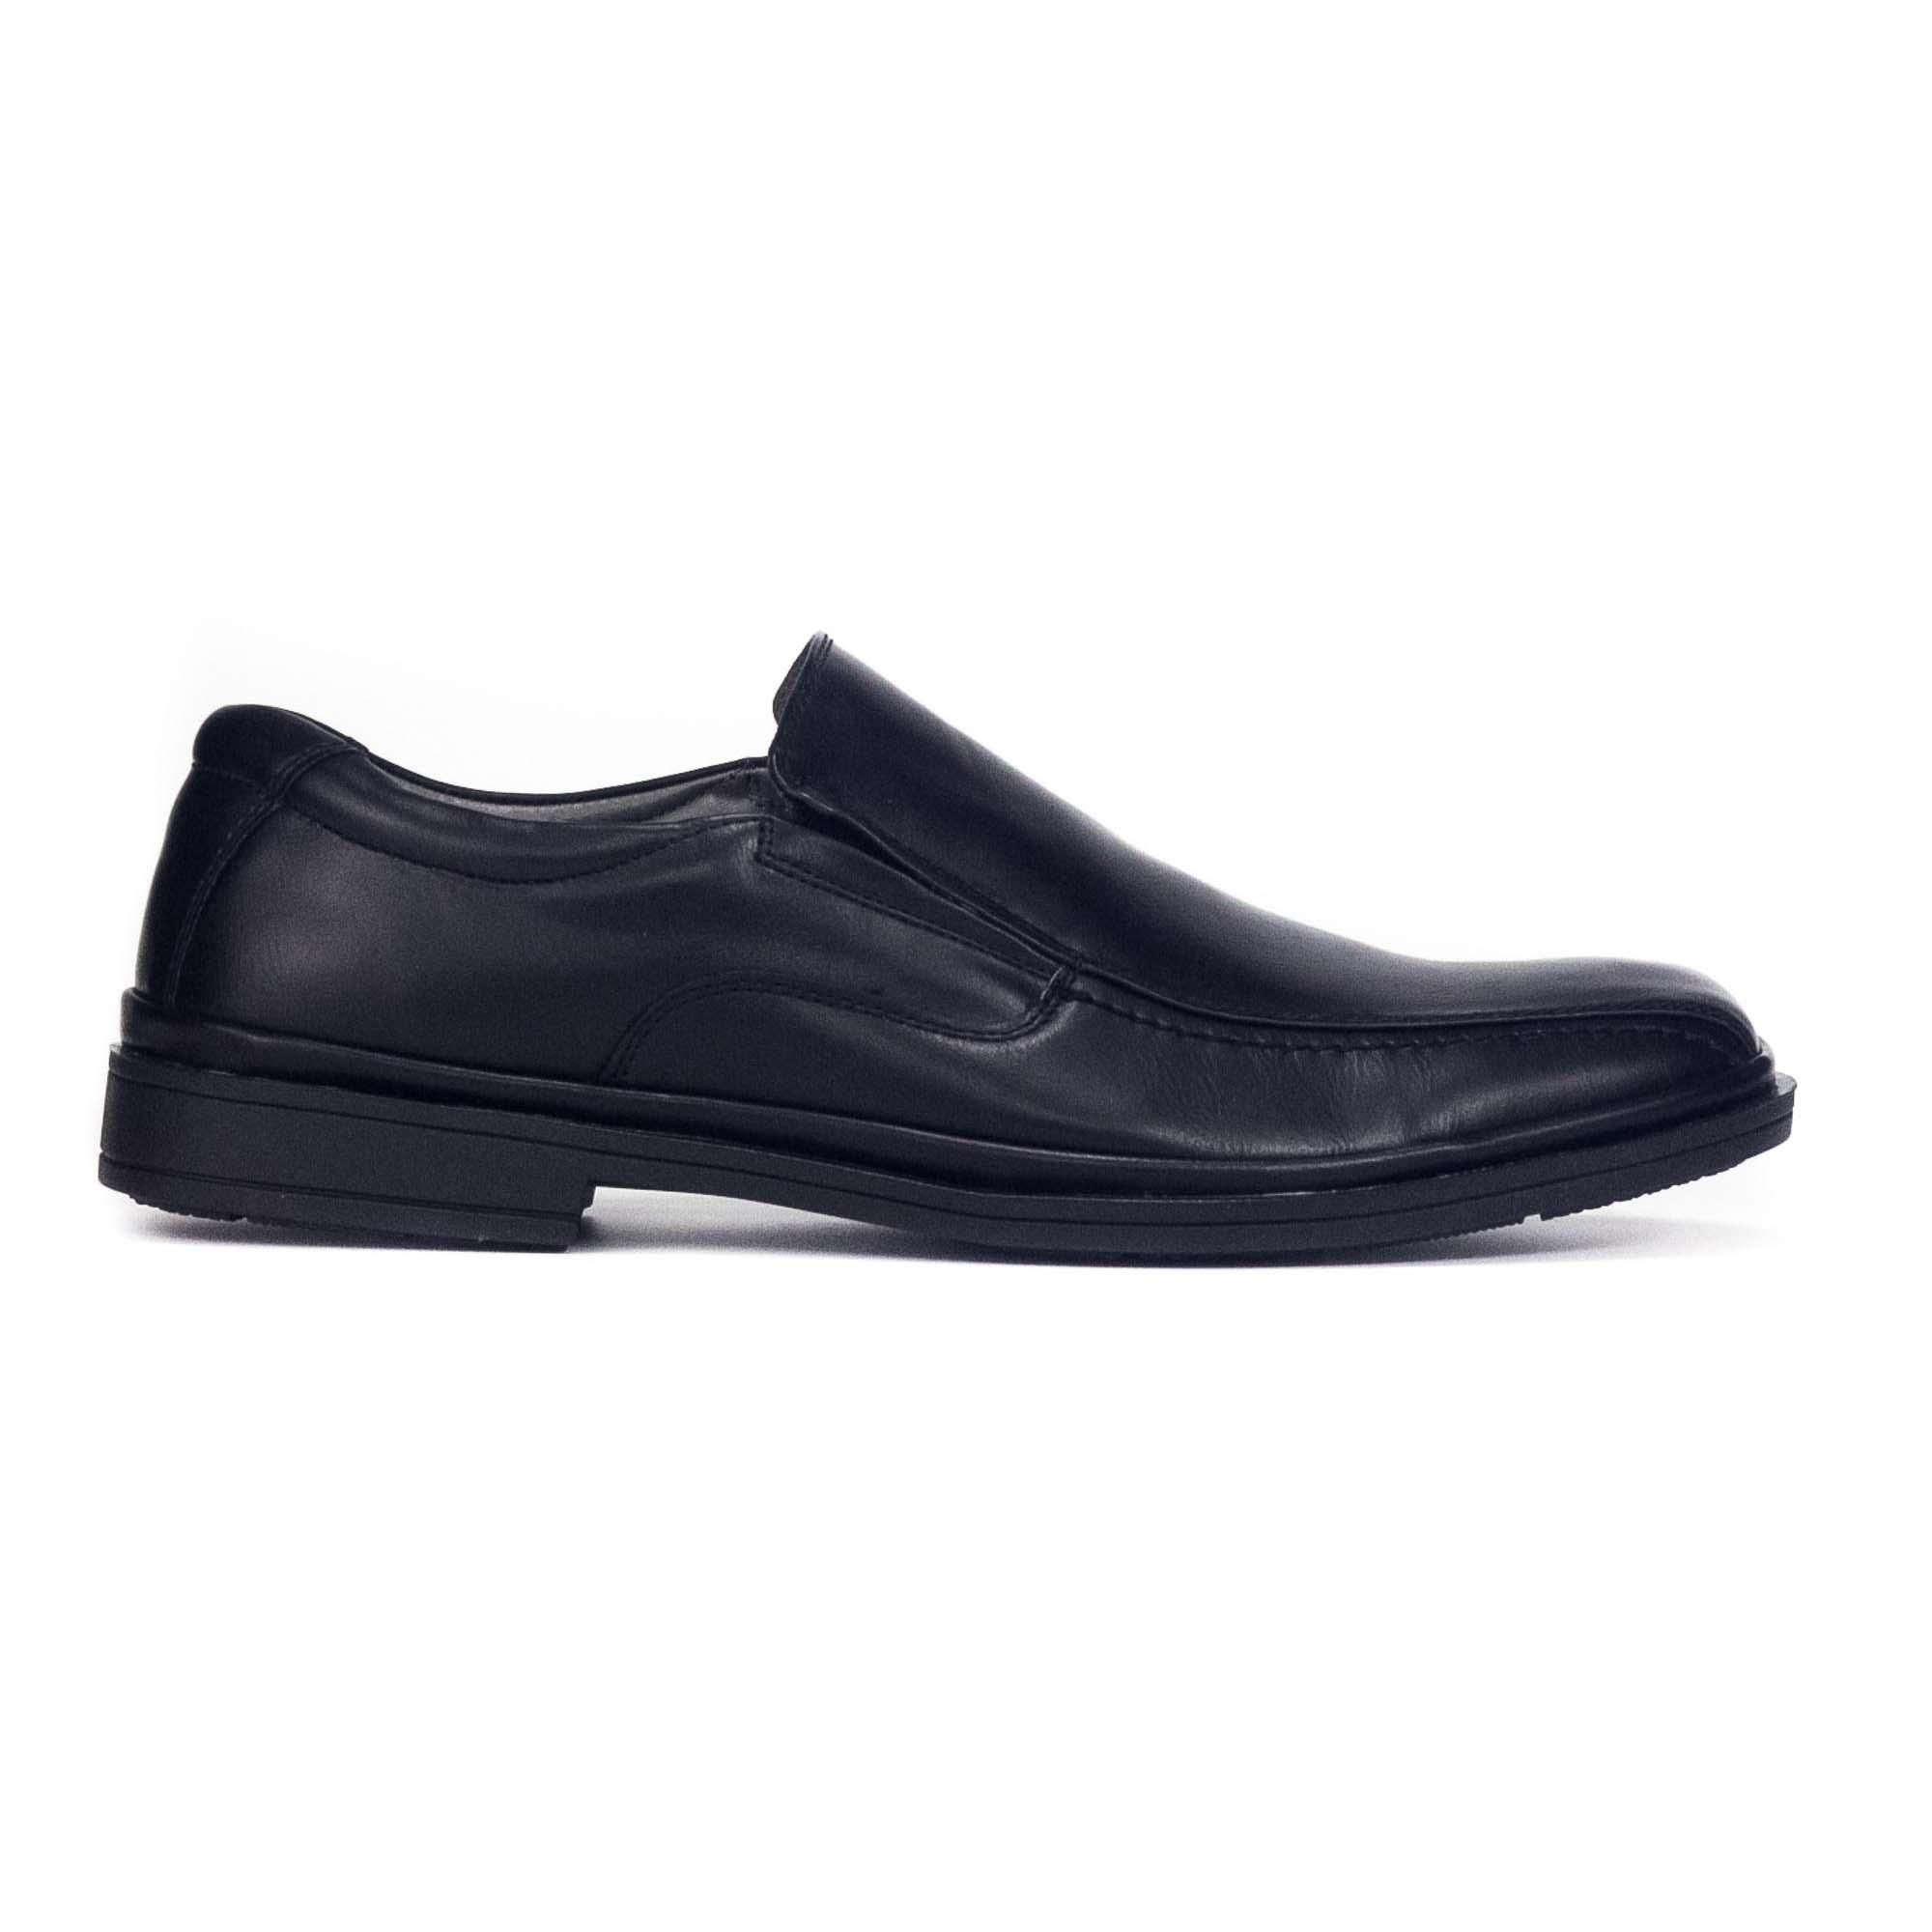 Buy Bata Men Shoes Online | lazada.sg